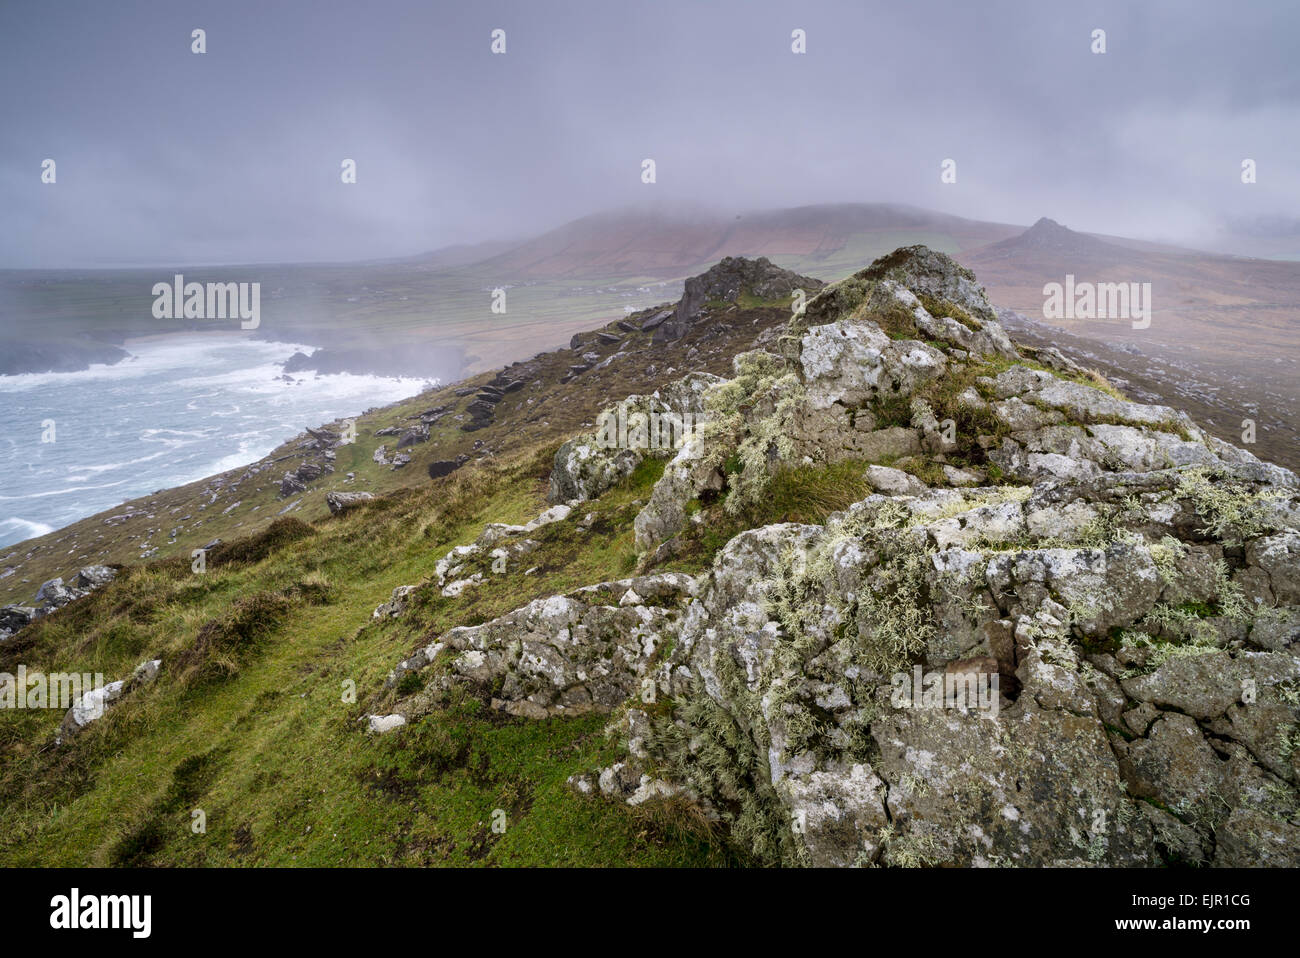 Vue depuis la colline rocheuse surplombant la côte, à la recherche d'Waymont, Clogher Bay, Graigue, péninsule de Dingle, comté de Kerry, Munster, Irlande, Novembre Banque D'Images